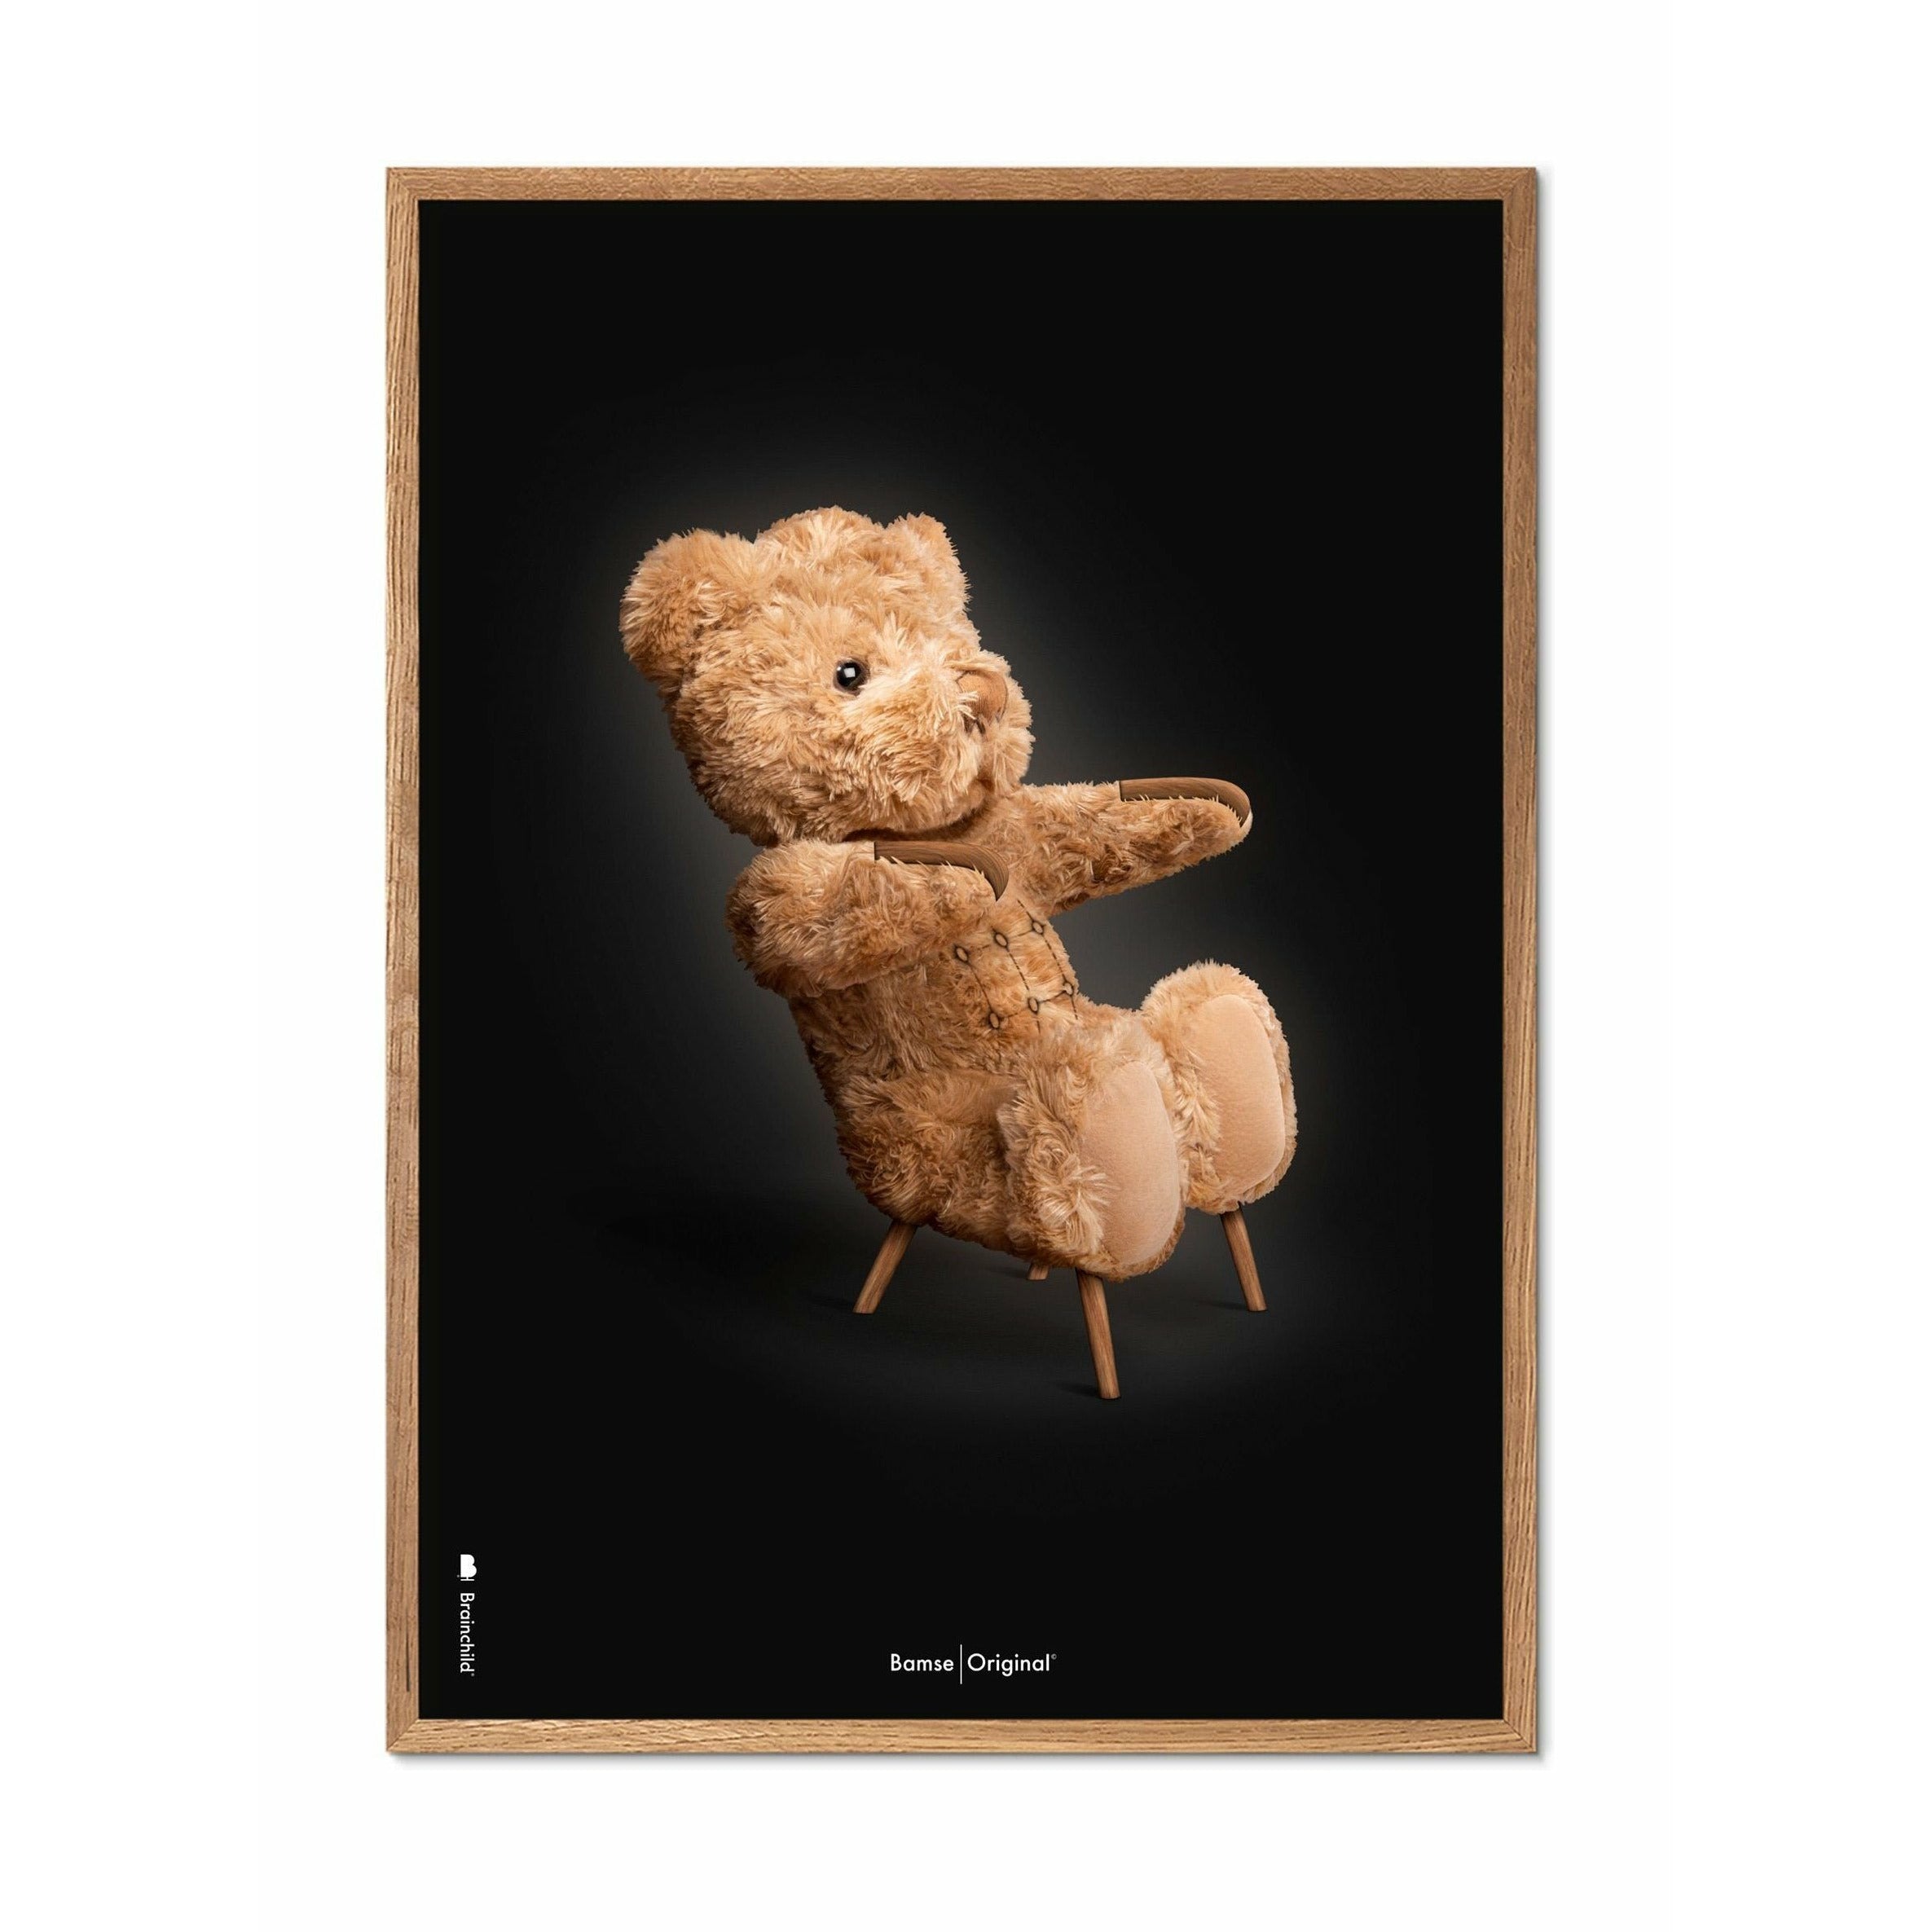 brainchild Teddy Bear Classic juliste, kehys, joka on valmistettu kevyestä puusta 30x40 cm, musta tausta